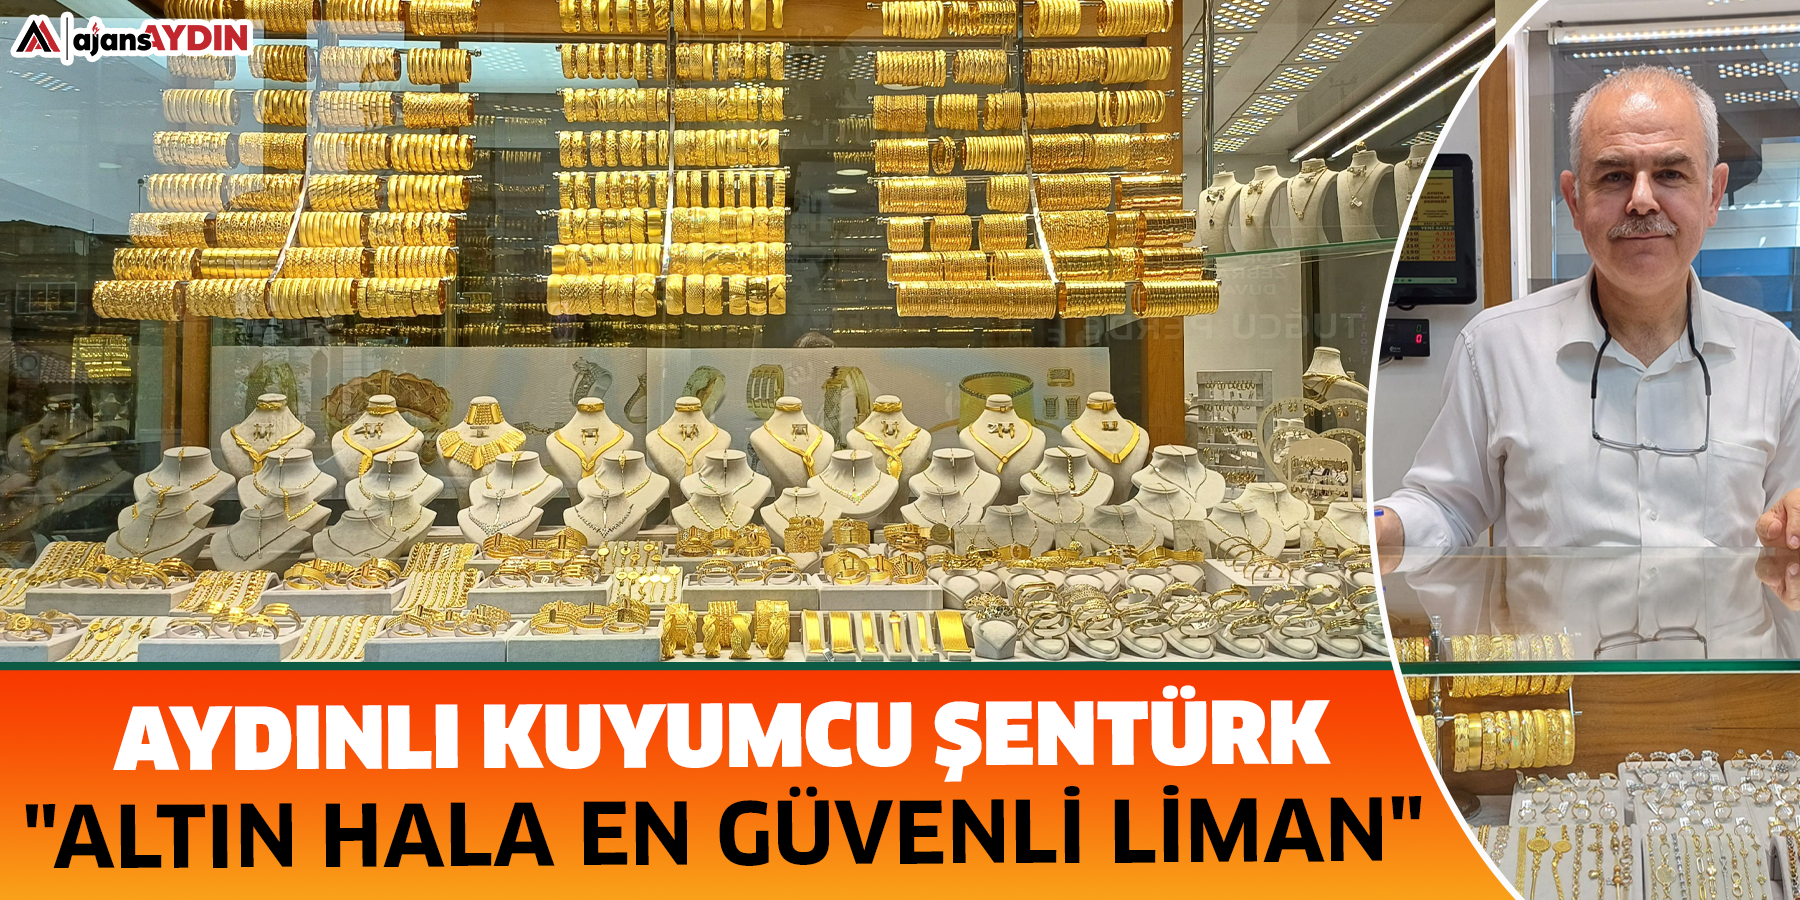 Aydınlı kuyumcu Şentürk: "Altın hala en güvenli liman"